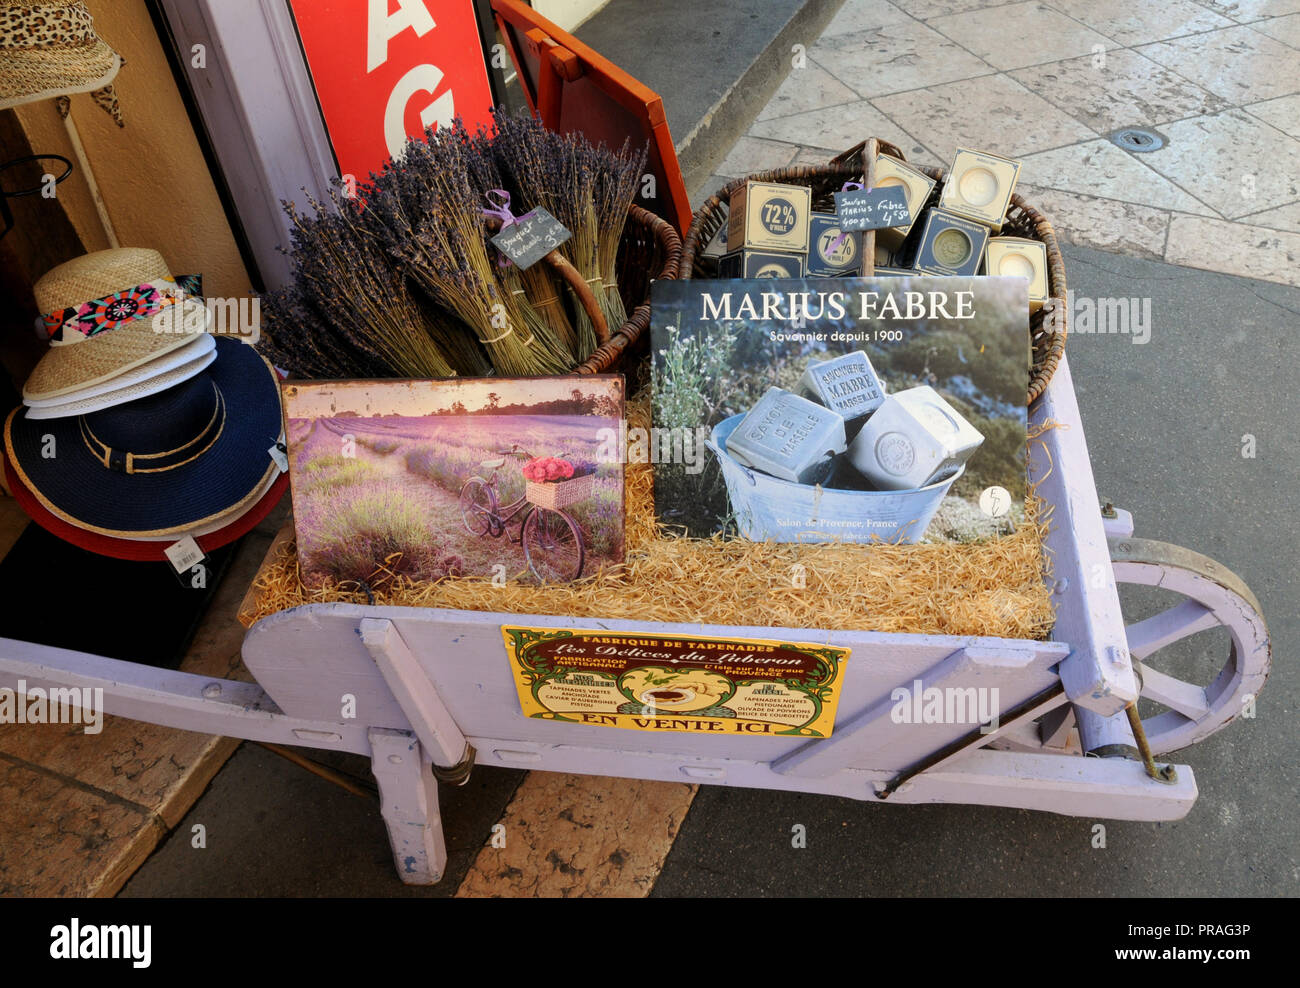 Una nuova visualizzazione dei doni turistici al di fuori di un negozio specializzato in cose provenzale, basato sulla lavanda, nel sud della cittadina francese di Apt. Foto Stock